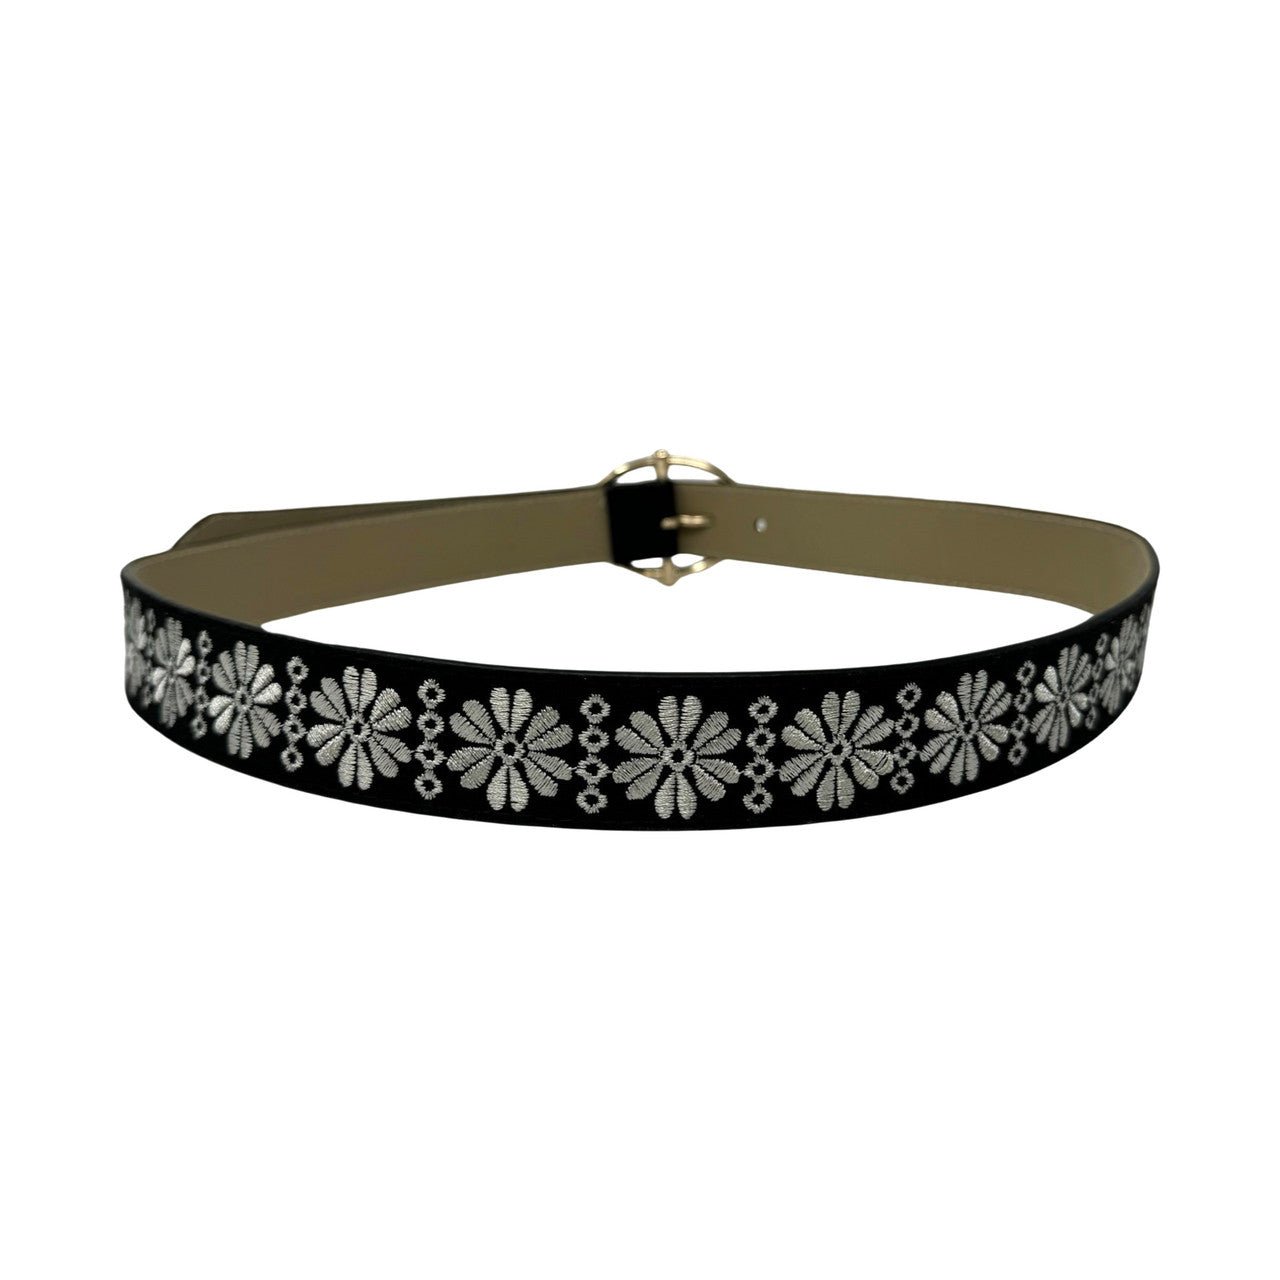 Linea Pelle Floral Embroidered Belt-Black Back